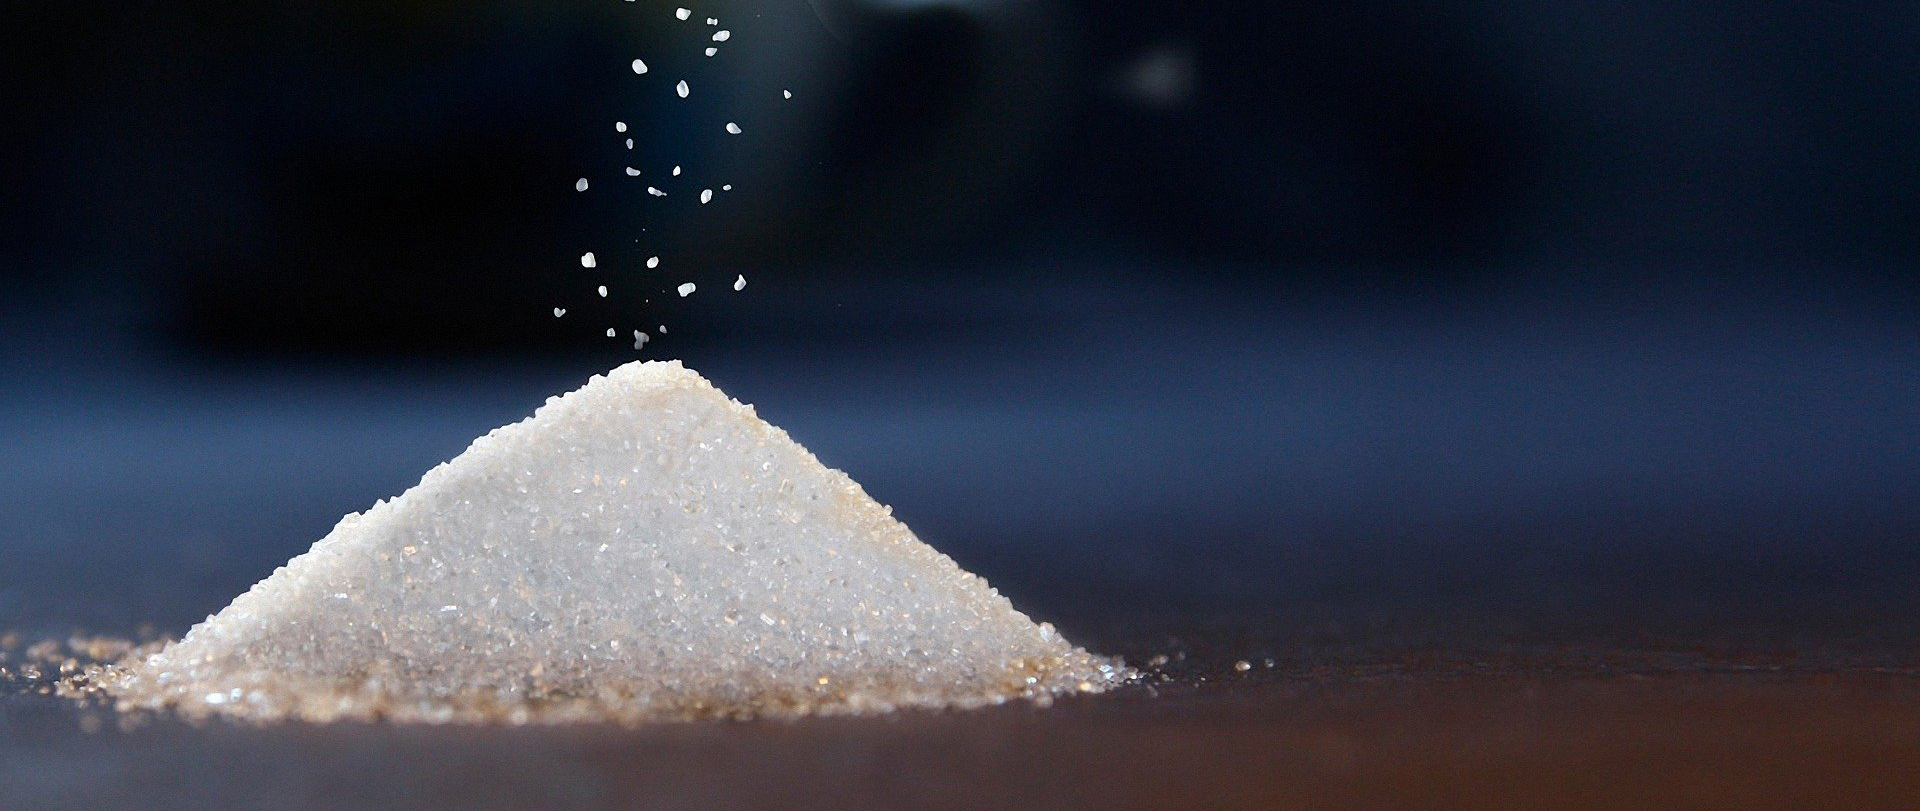 Kunstige sødestoffer - hvad mener gasttroulven